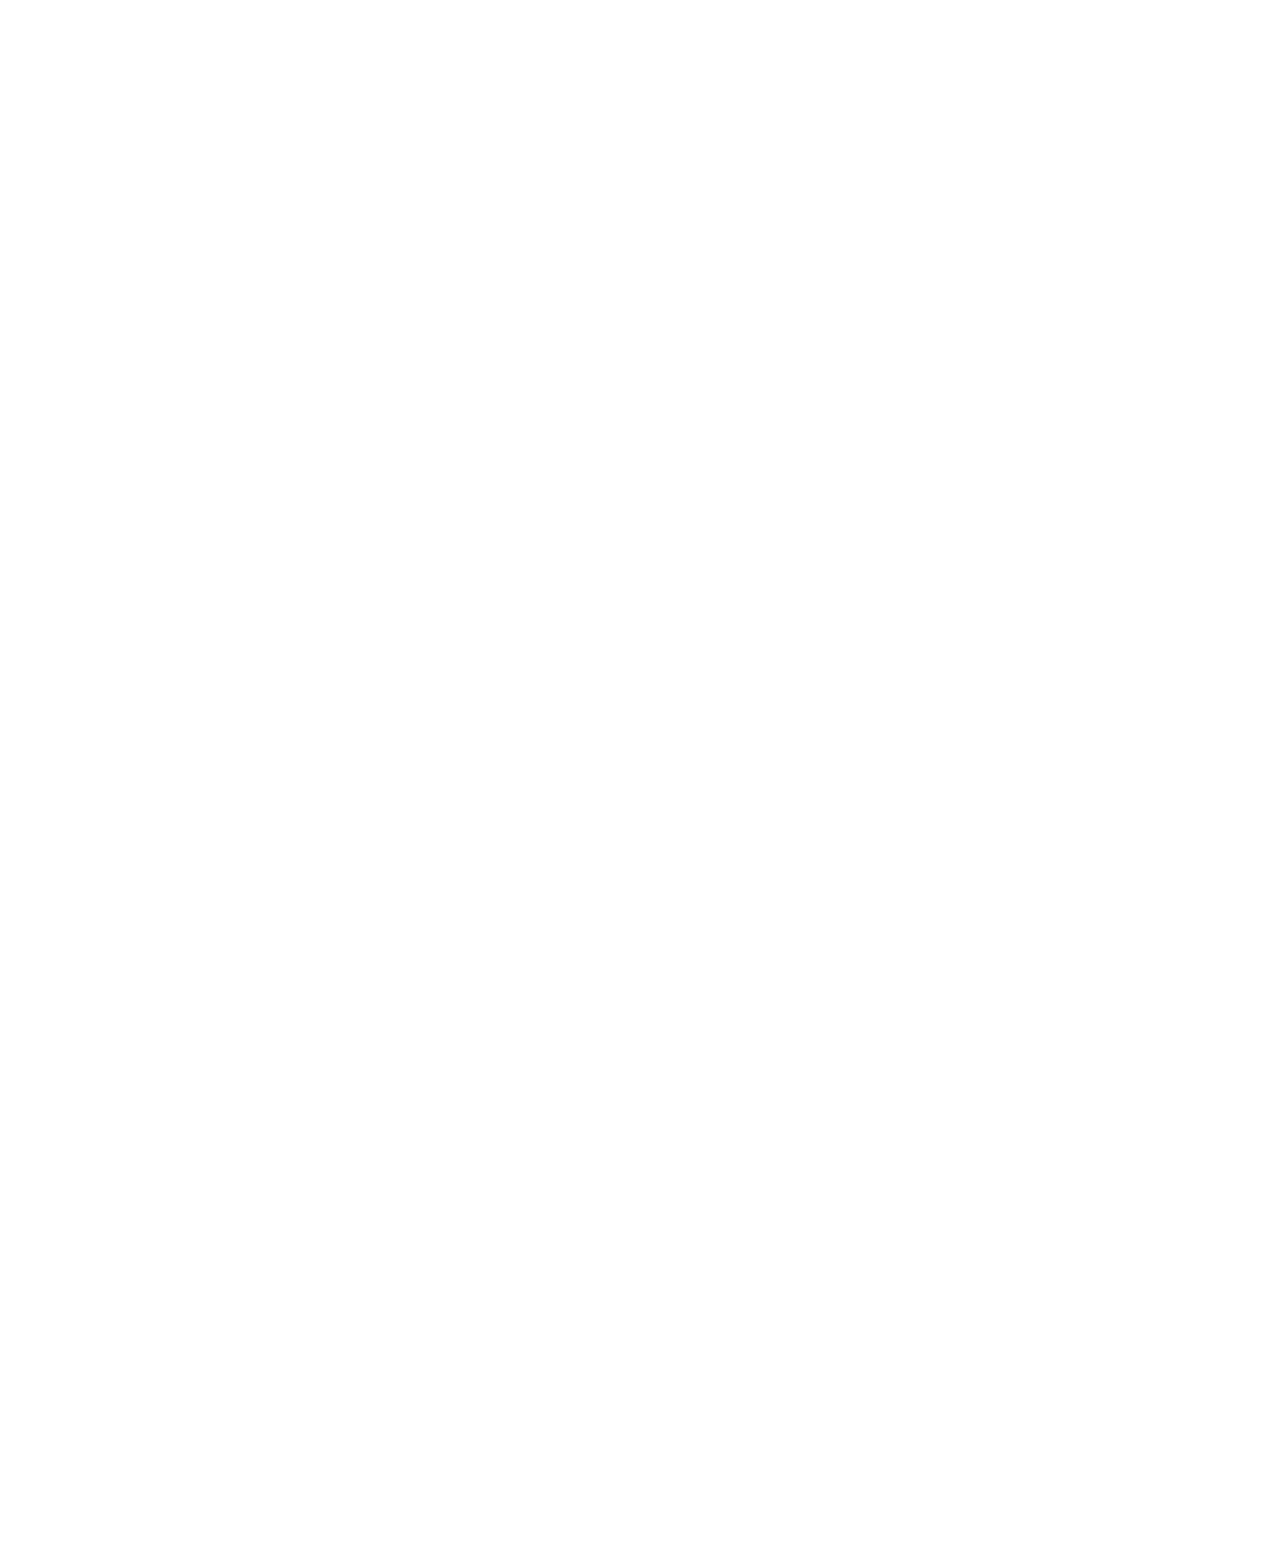 Unipar Carbocloro logo pour fonds sombres (PNG transparent)